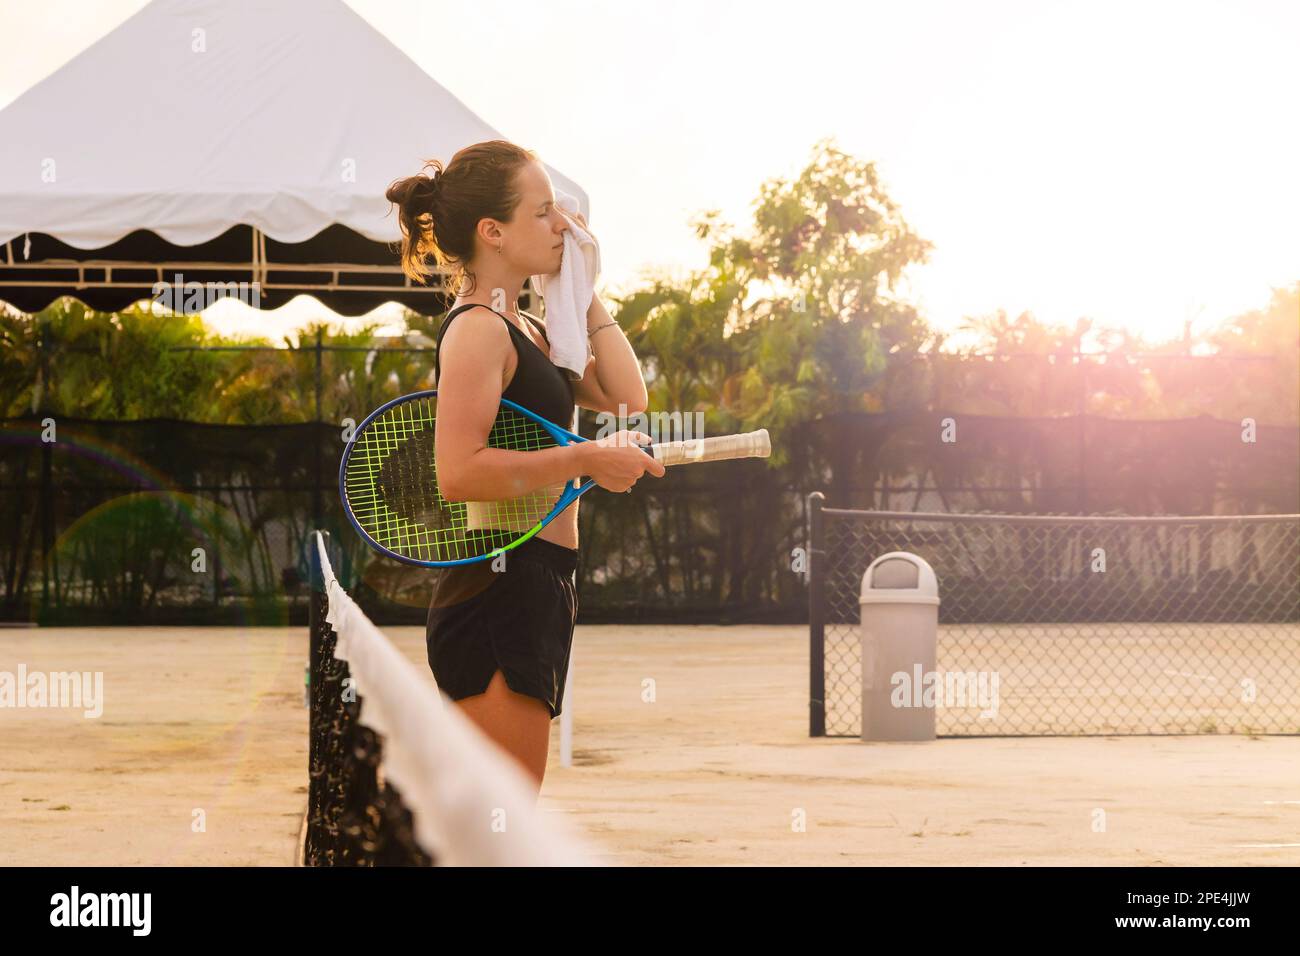 Tennisspielerin, die sich das Gesicht mit einem Handtuch abwischte, während sie auf dem Tennisplatz stand. Stockfoto